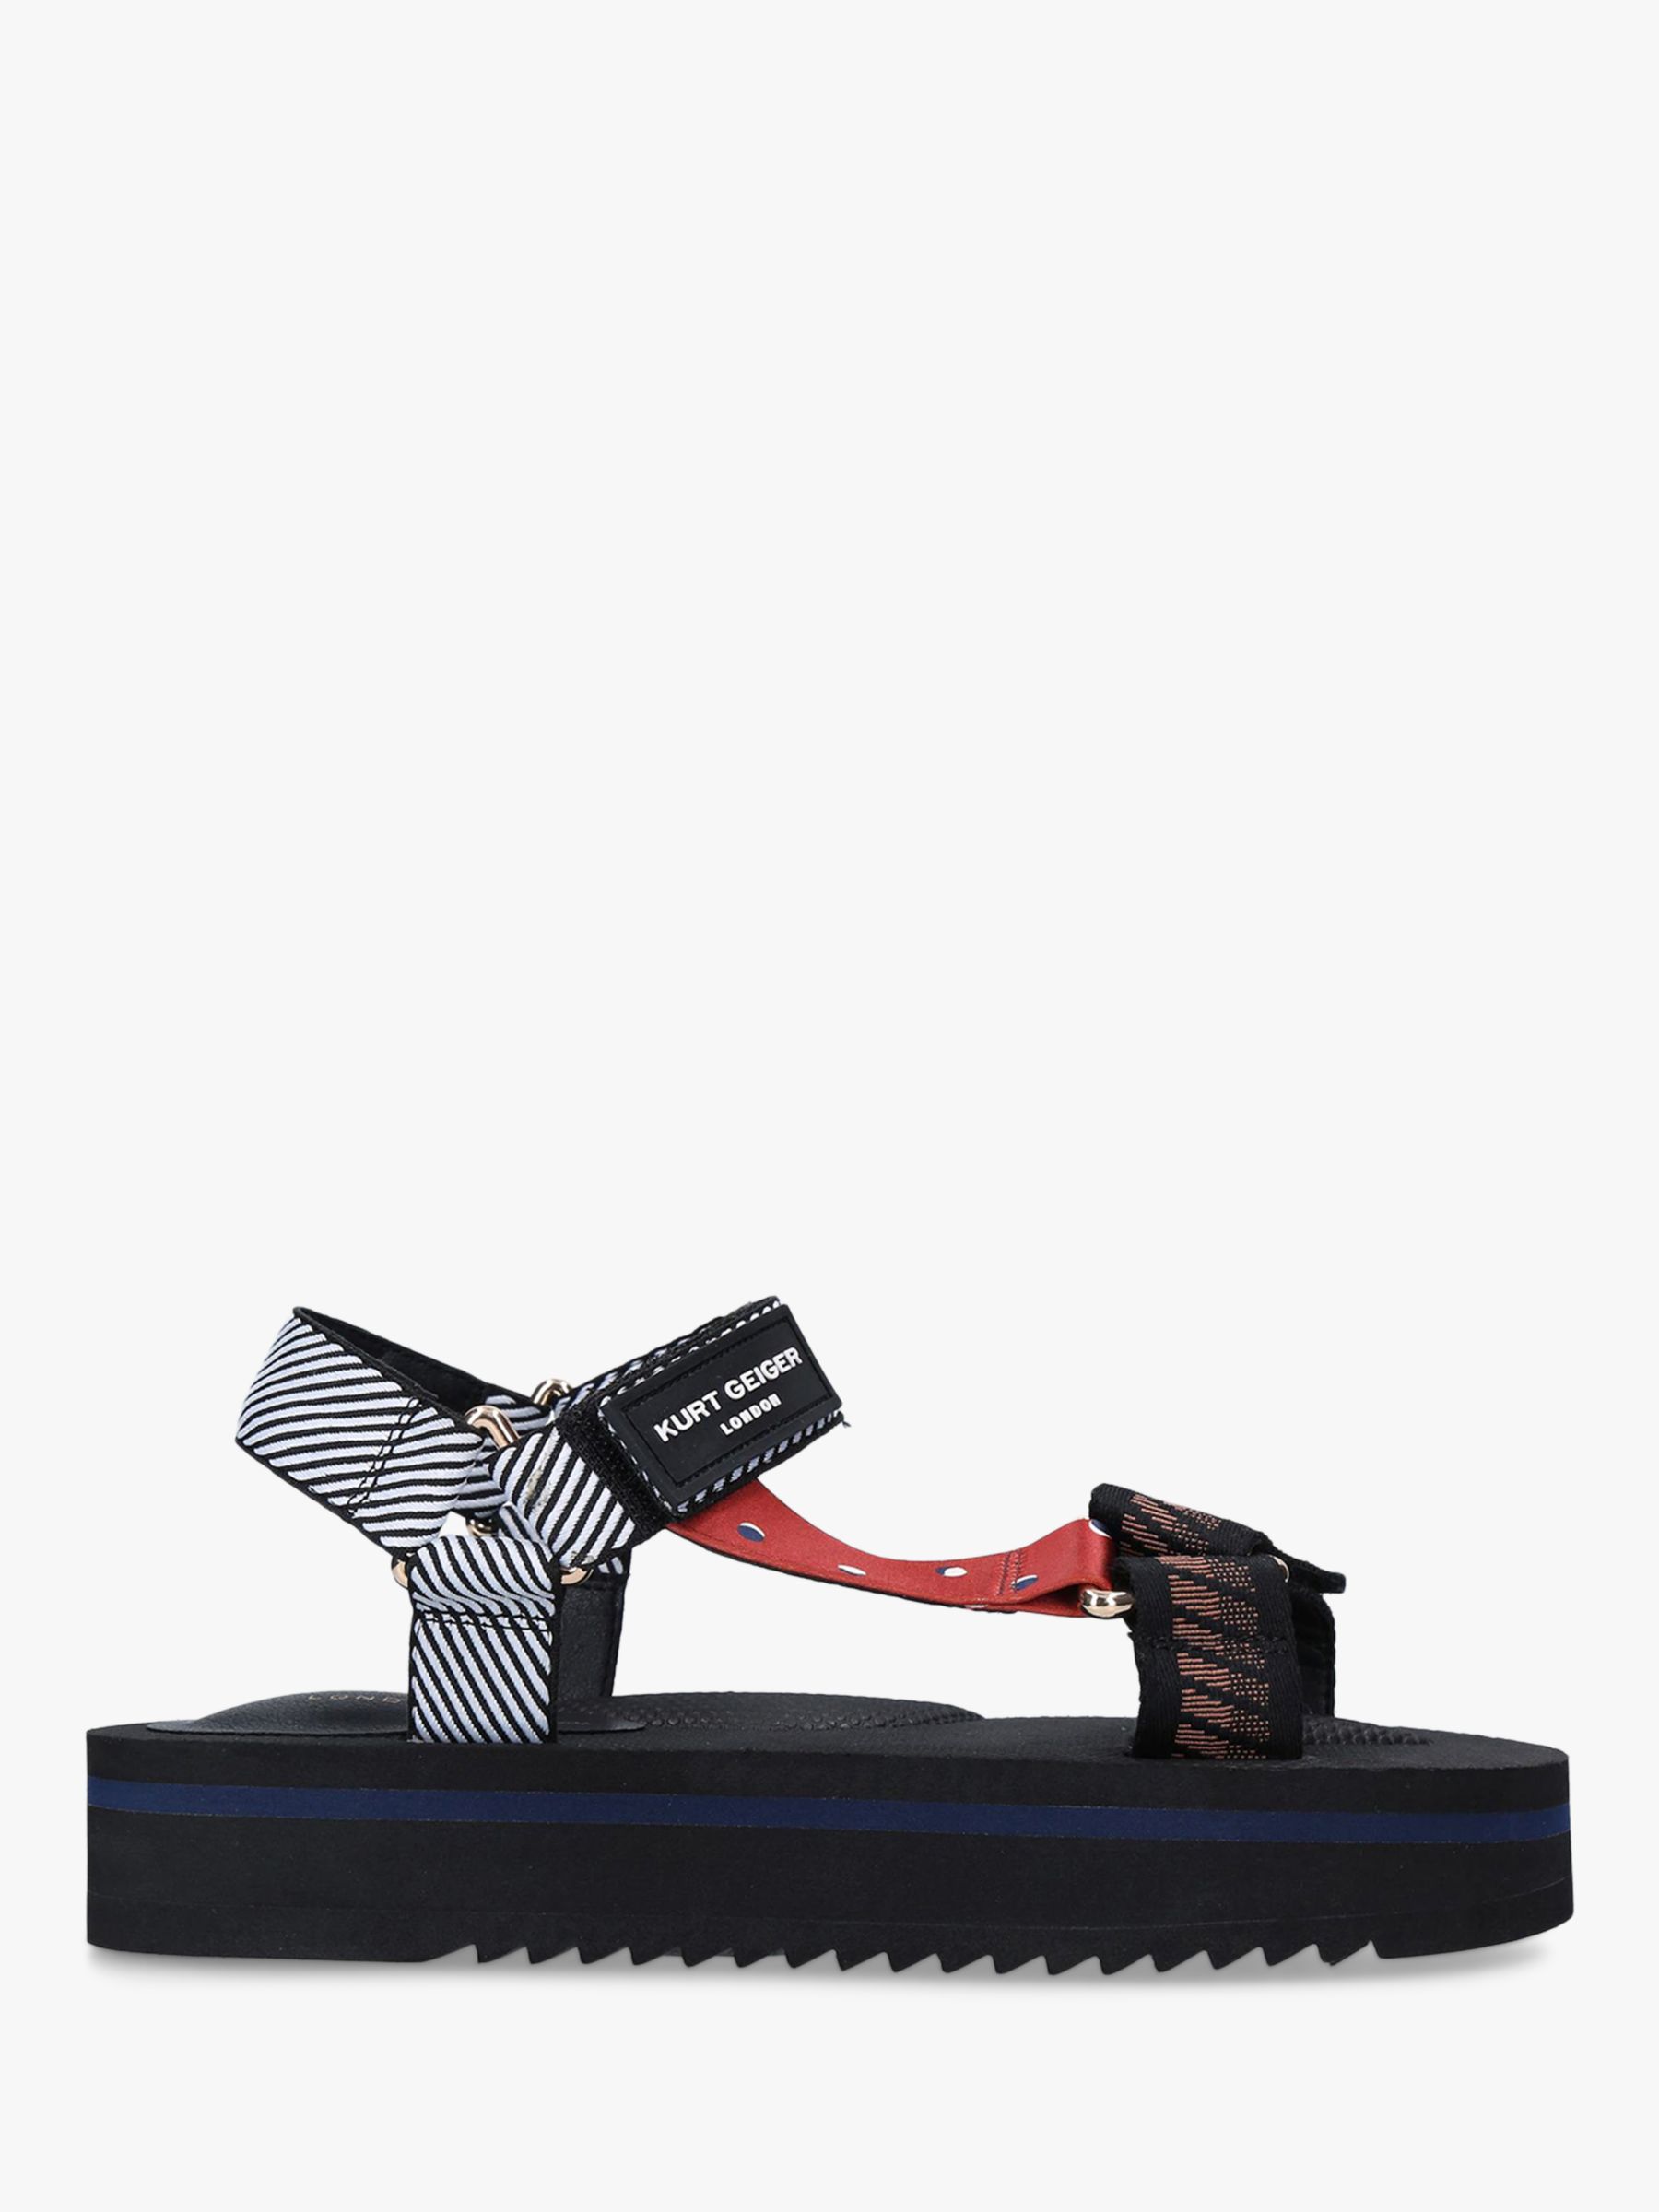 Kurt Geiger London Olivia Patterned Embellished Sporty Sandals